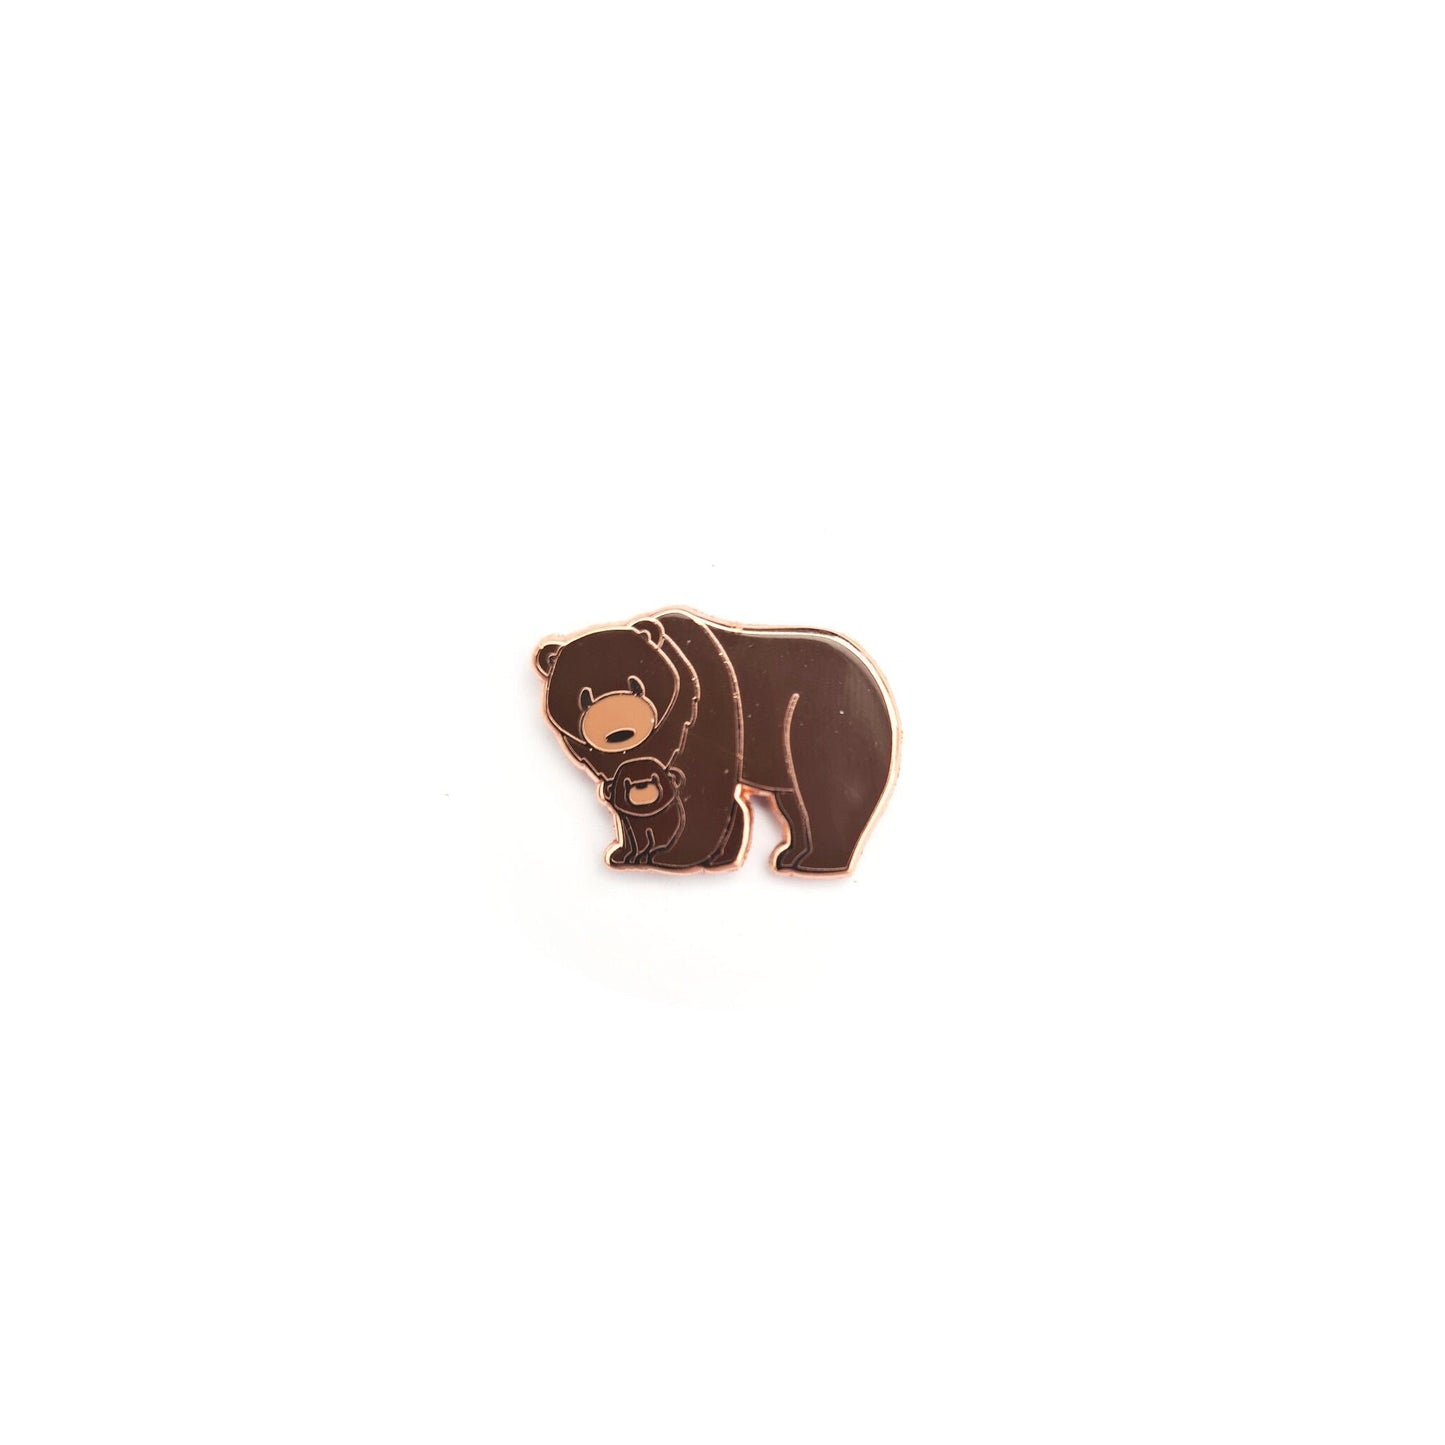 Papa Bear and Baby Bear - Small Enamel Pin Set of 4, Pins, Brooches & Lapel Pins